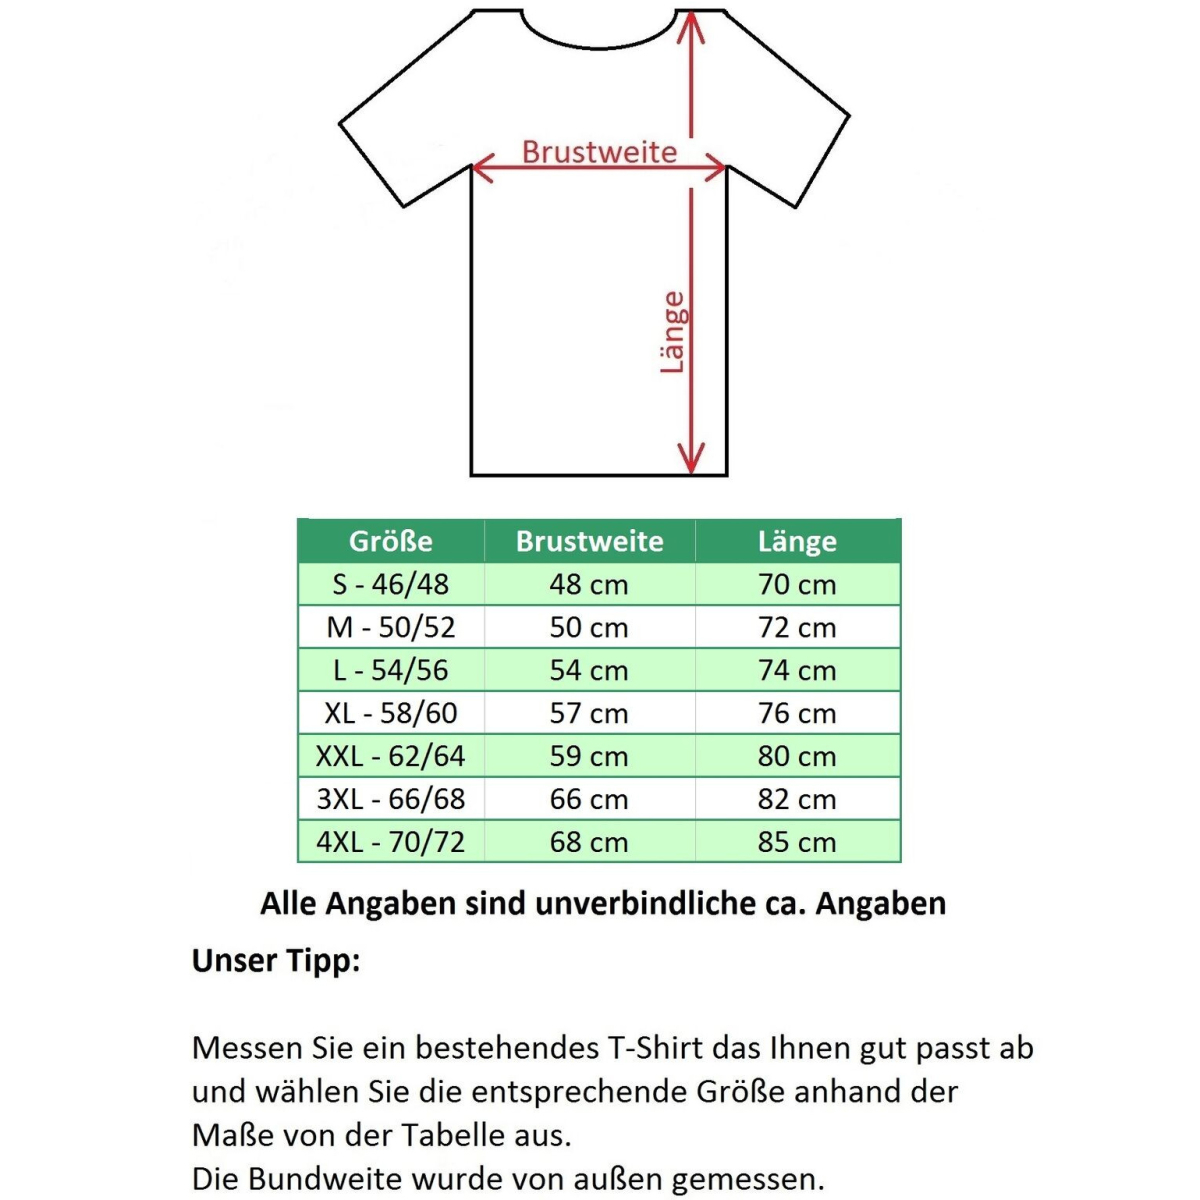 Moderne und ergonomische T-Shirts Modell elysee, - 4,49 ULRICH €